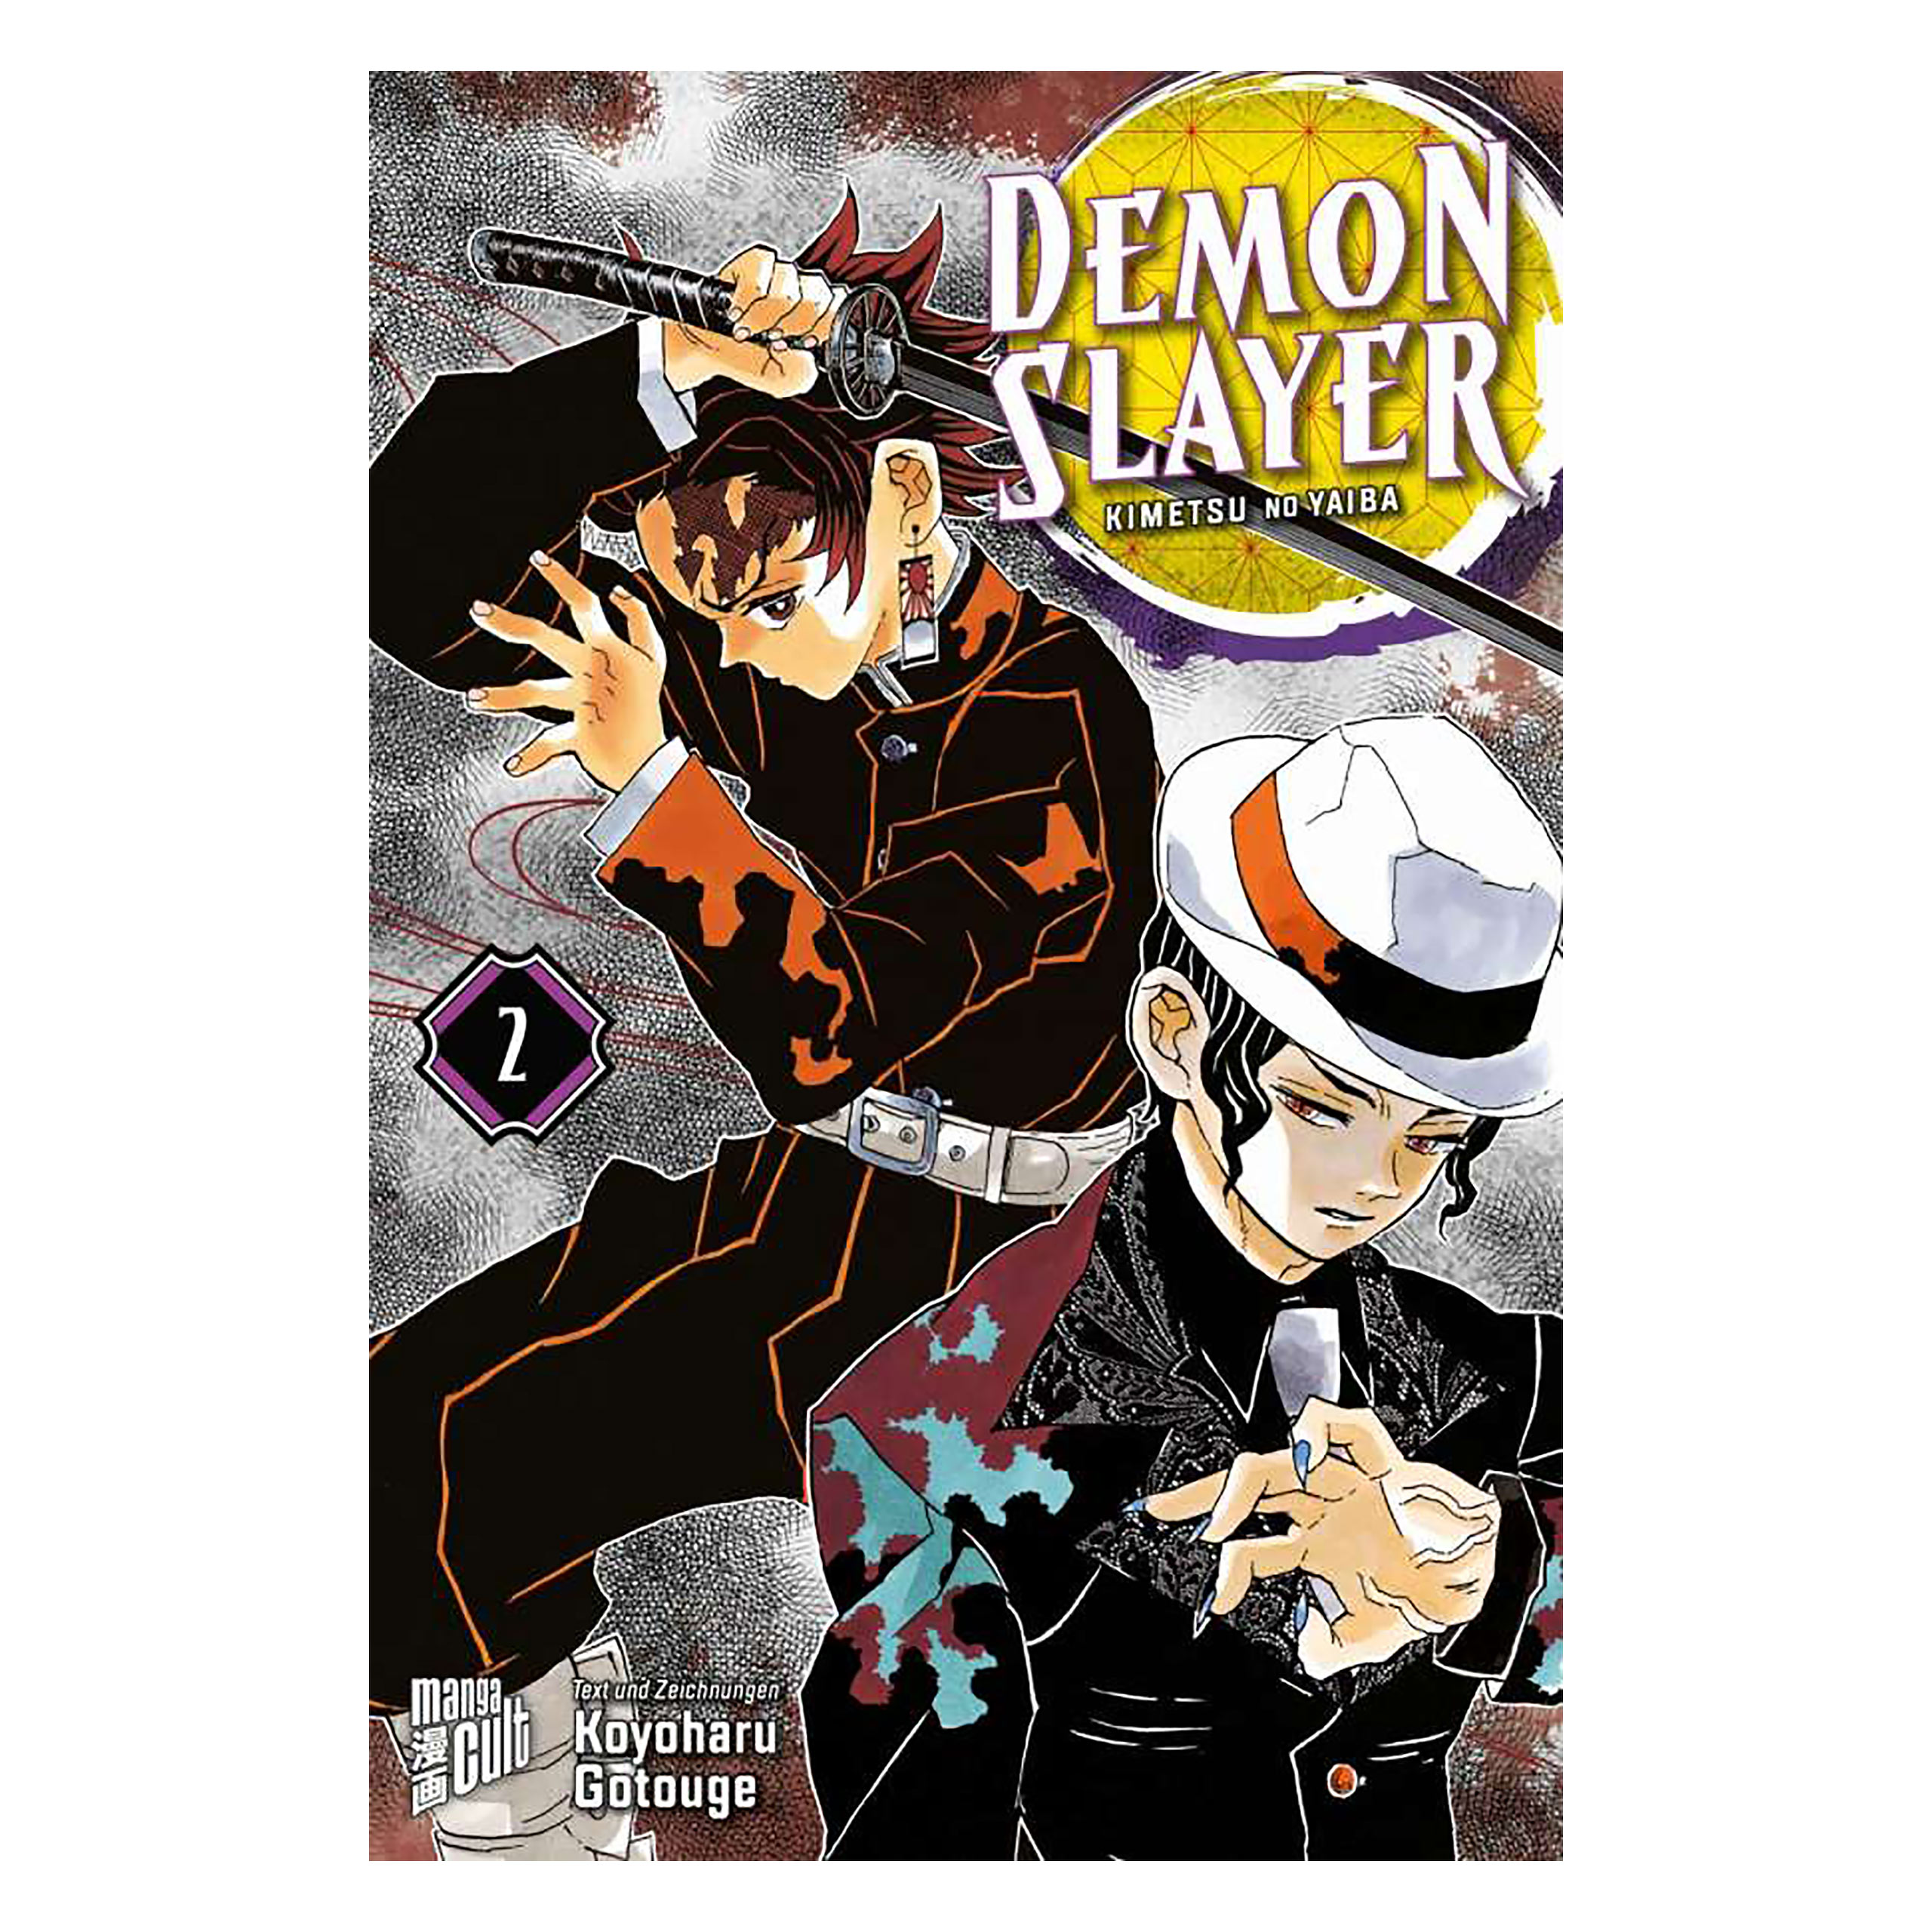 Demon Slayer - Kimetsu no yaiba Tome 2 Broché